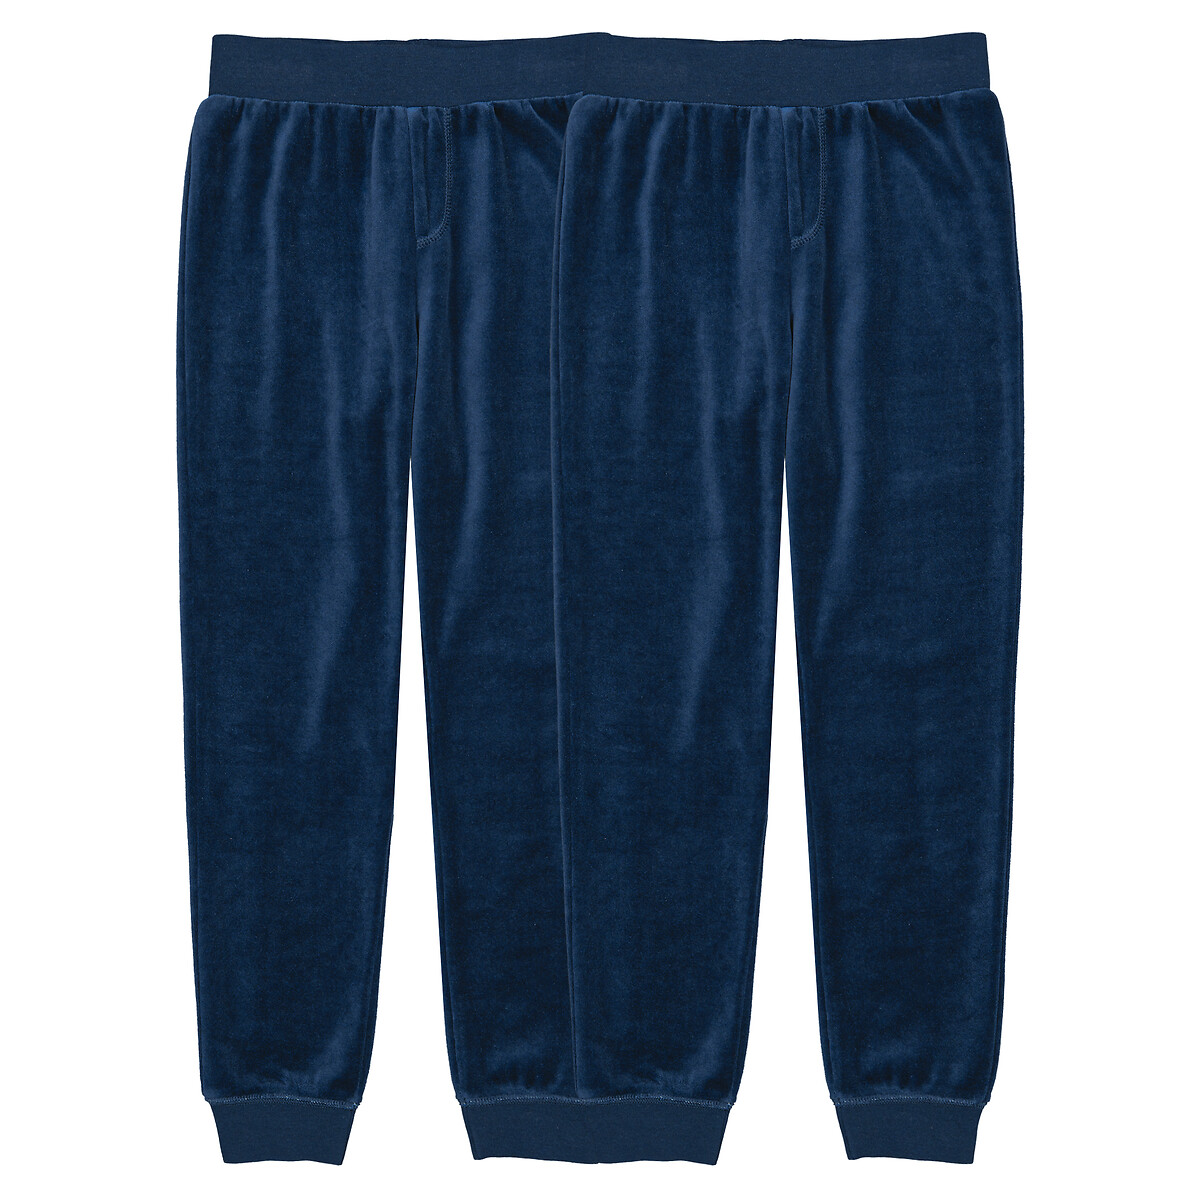 Комплект из двух брюк пижамных из велюра 3 года - 94 см синий комплект из двух брюк пижамных из велюра 3 года 94 см синий